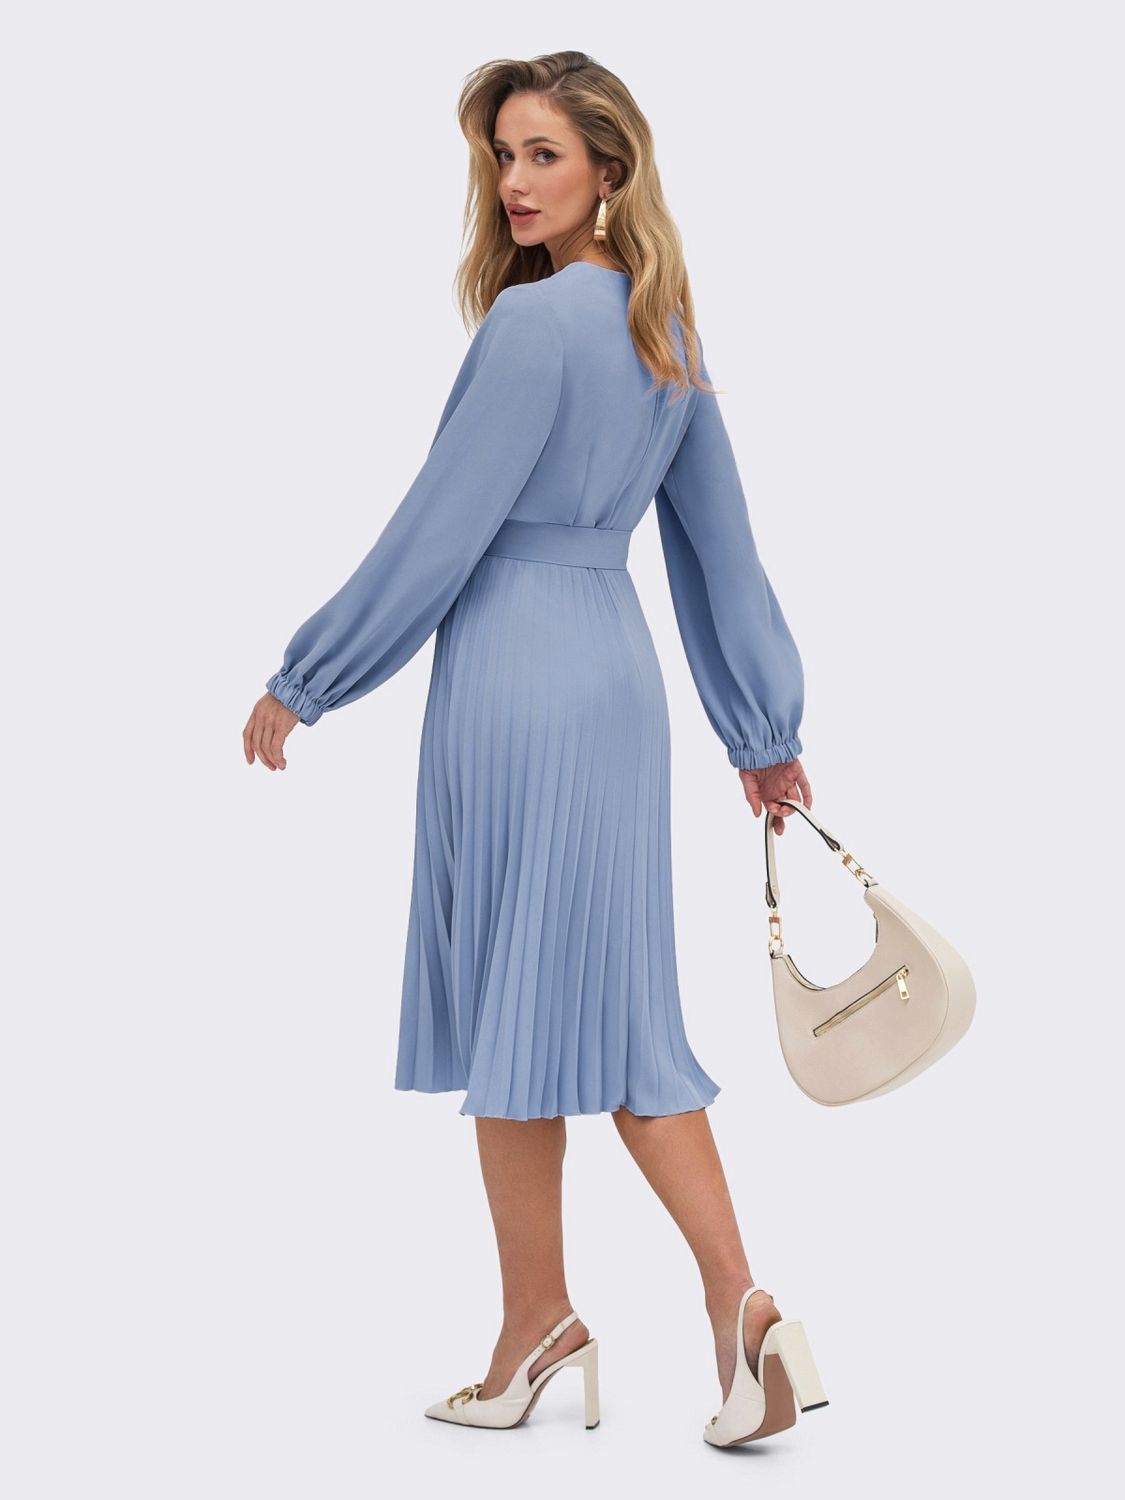 Платье-миди с юбкой-плиссе голубого цвета - фото